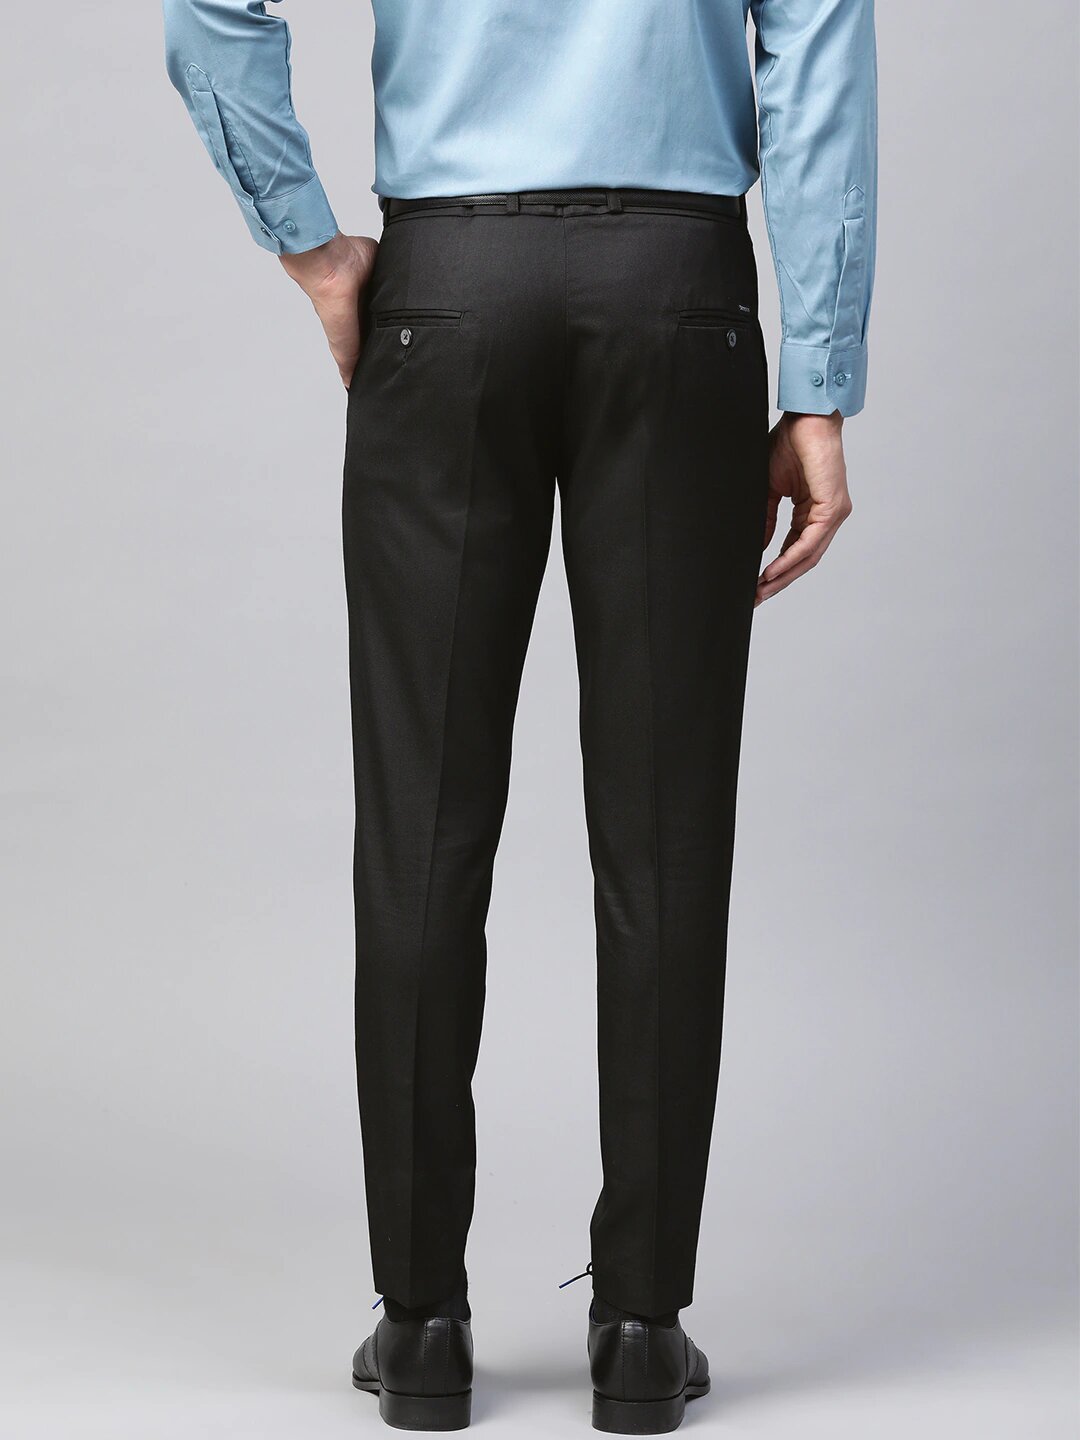 Men's Smart Black Trousers | Suit & Tuxedo Trousers